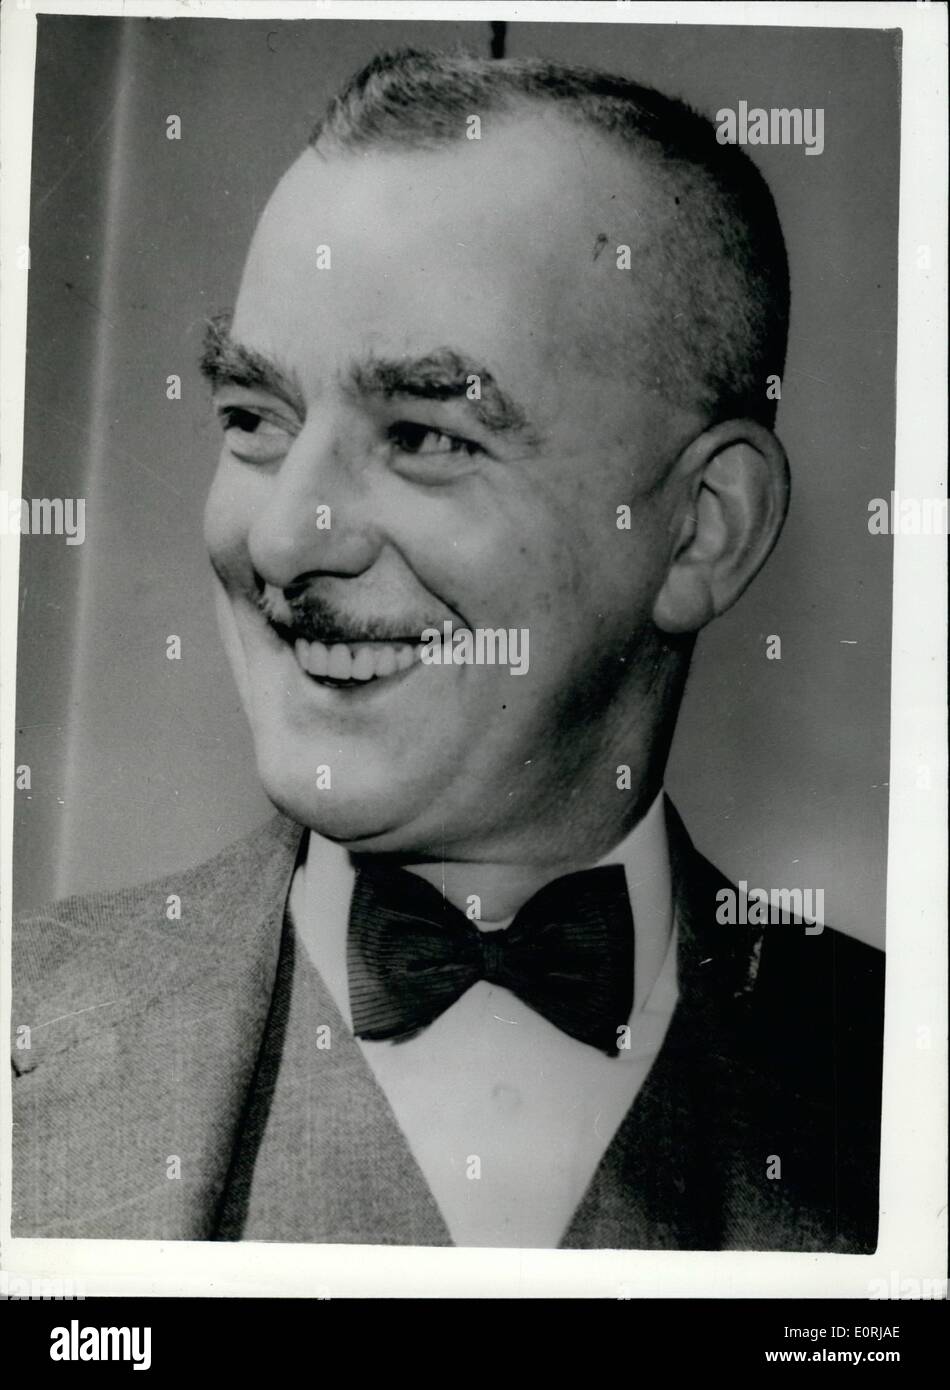 11 novembre 1959 - l'homme qui se bloque, fritz guenther podola - était un ami de sa victime. M. Harry Allen le bourreau - qui va exécuter demain Guenther Podola fritz, pour le meurtre de sergent-détective. Raymond Purdy - a dit hier qu'il était un ami de purdy - la victime de l'allemand. Le moment de l'exécution à wandsworth demain, qui a été reportée de l'habituel 9 a.. pour de la clé de contrôle 9-45 h de sorte que quand il est pendu les autres prisonniers seront au travail. photo montre M. Harry Allen le bourreau officiel - qui accrochera Podola demain. Banque D'Images